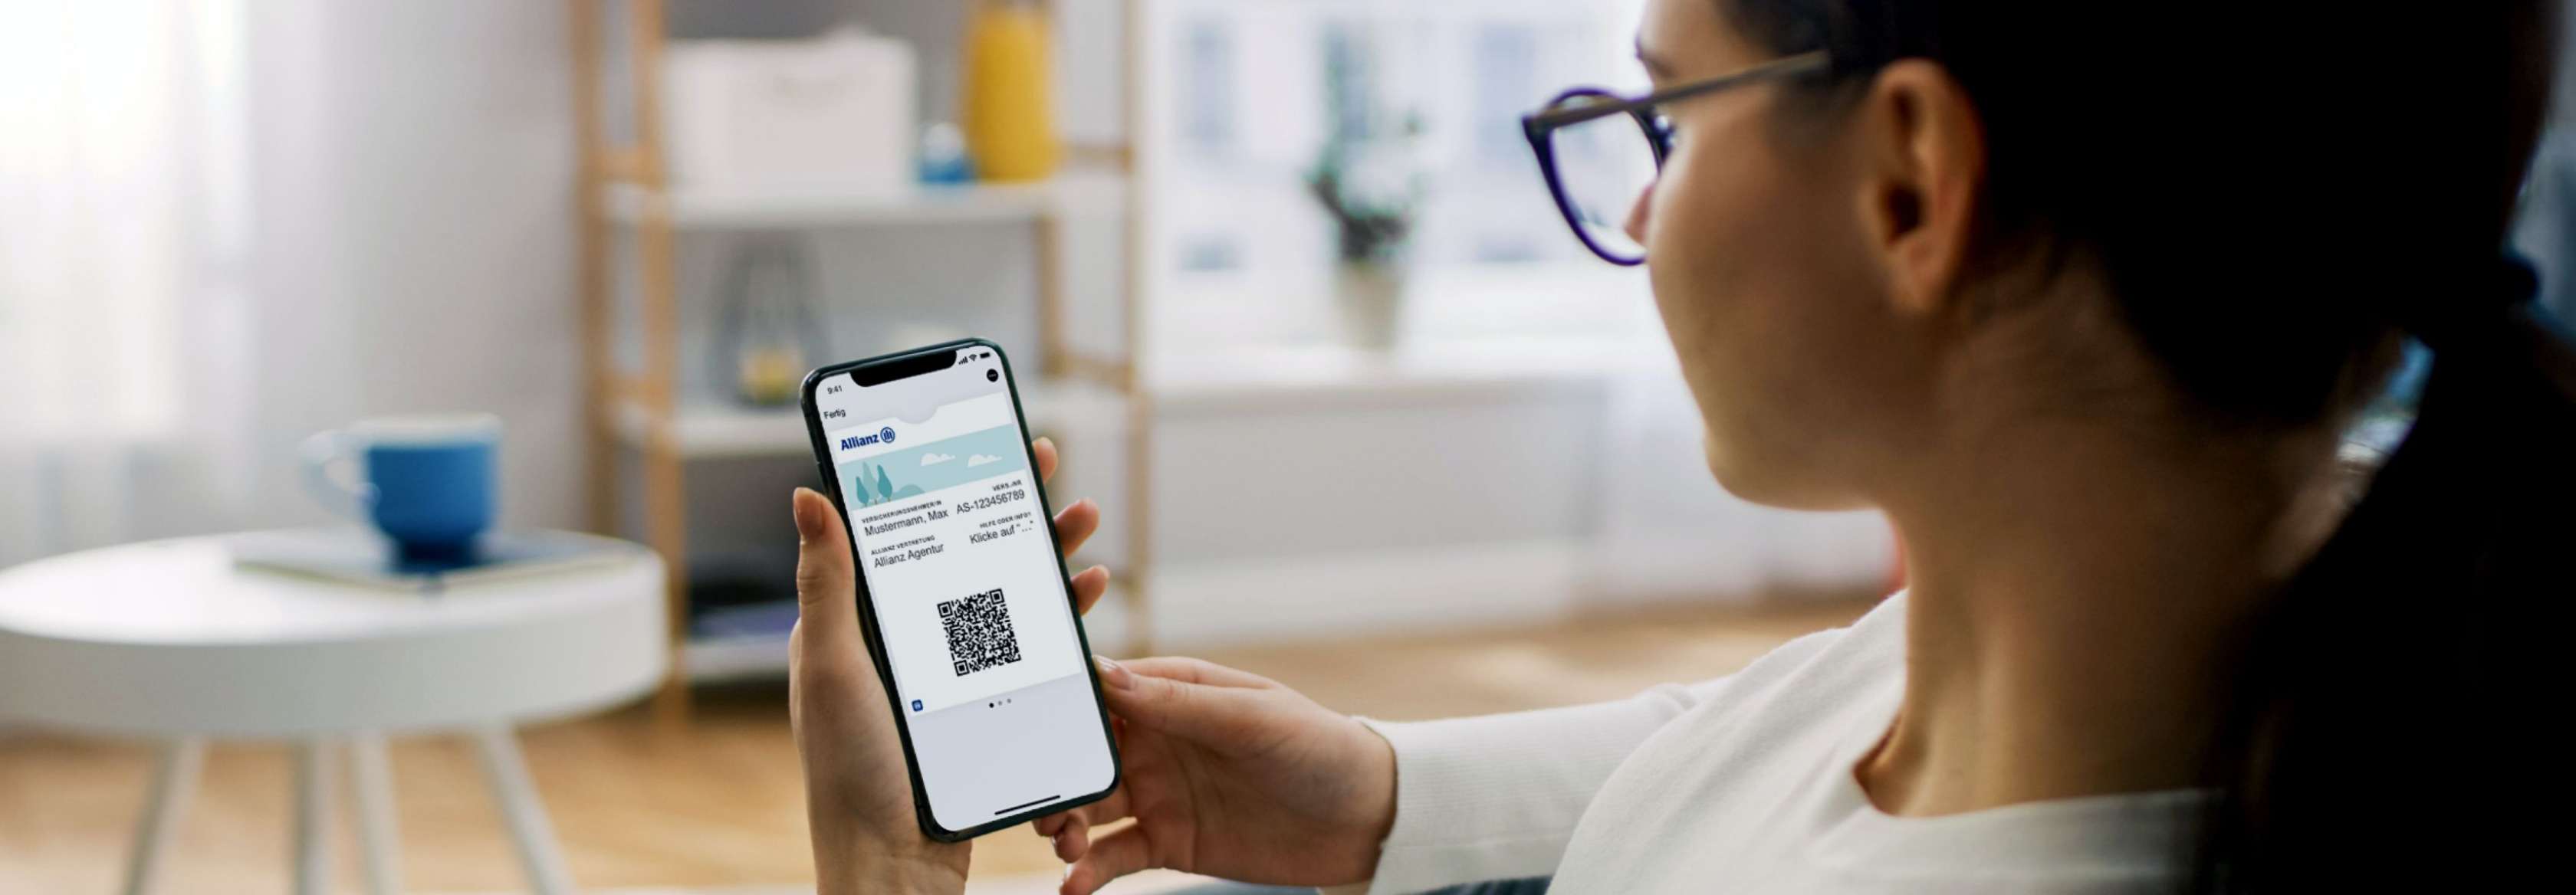 Digitale Versicherungskarte der Allianz für Ihr Smartphone - nutzen Sie das Wallet-Portal